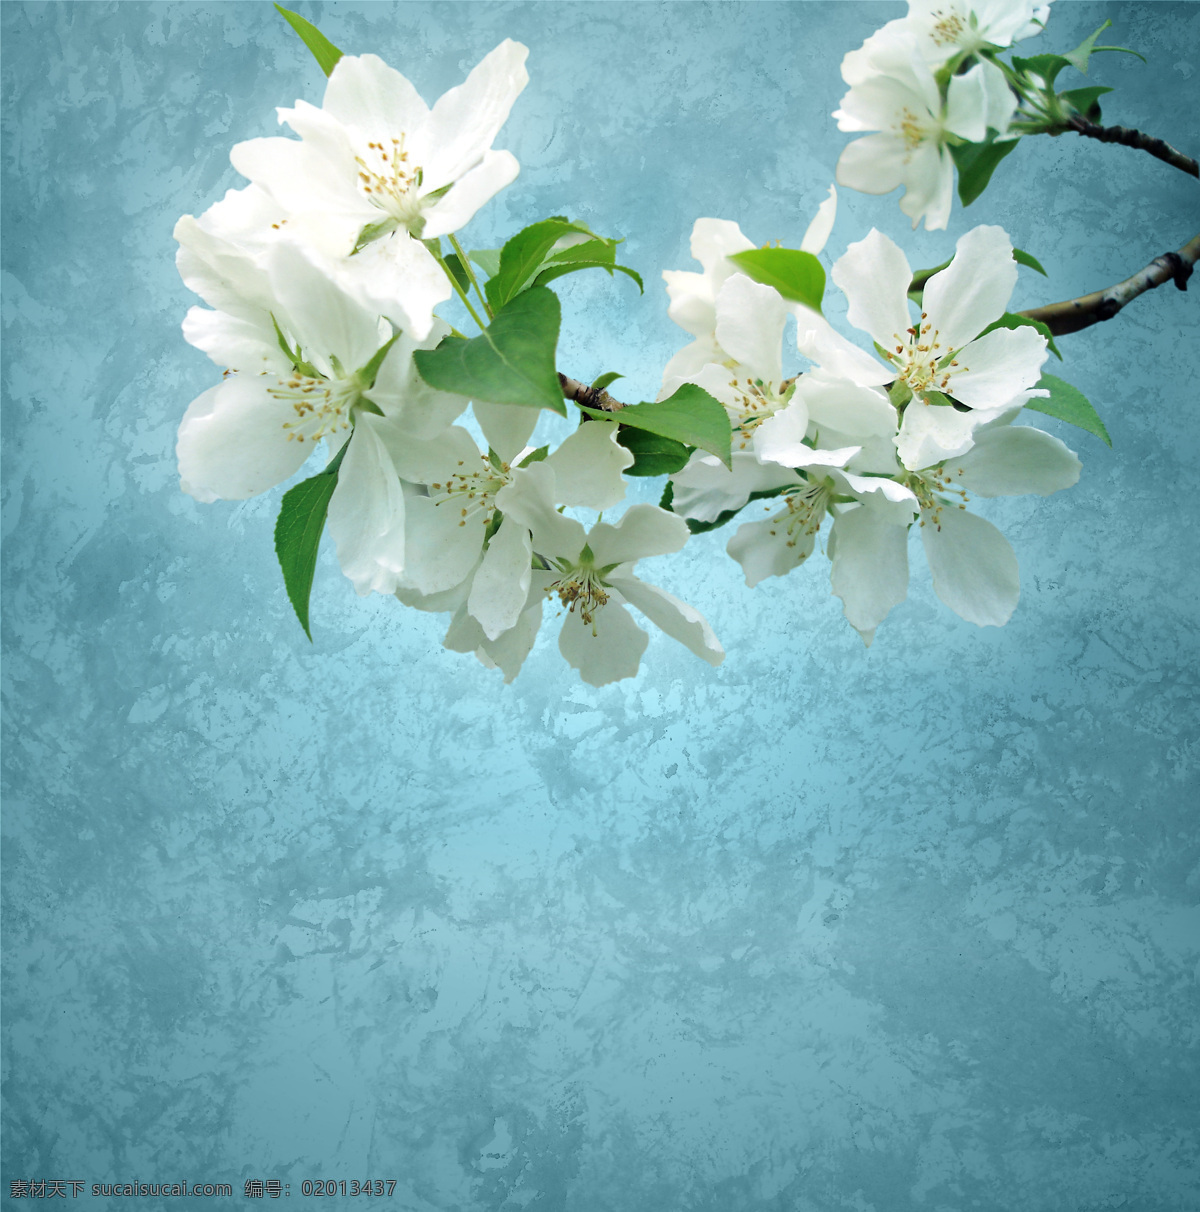 白色花朵摄影 白色花朵 美丽鲜花 美丽花朵 花卉 漂亮花朵 鲜花摄影 其他类别 生活百科 青色 天蓝色